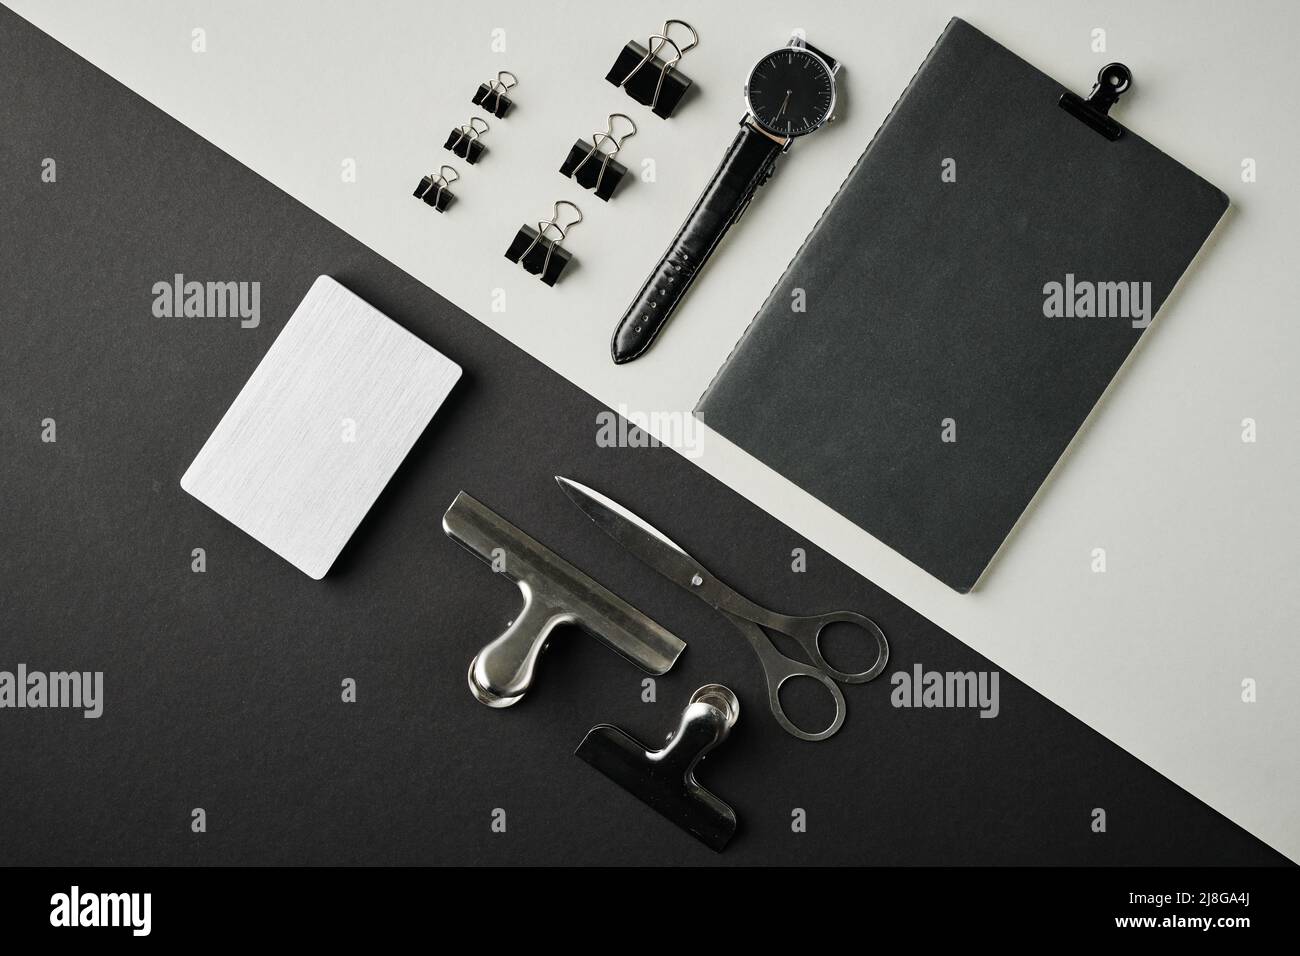 Présentation du bloc-notes noir, de la montre-bracelet, de l'ensemble de clips, des ciseaux et du bloc-notes blanc sur un fond contrasté ou sur le lieu de travail d'un professionnel Banque D'Images